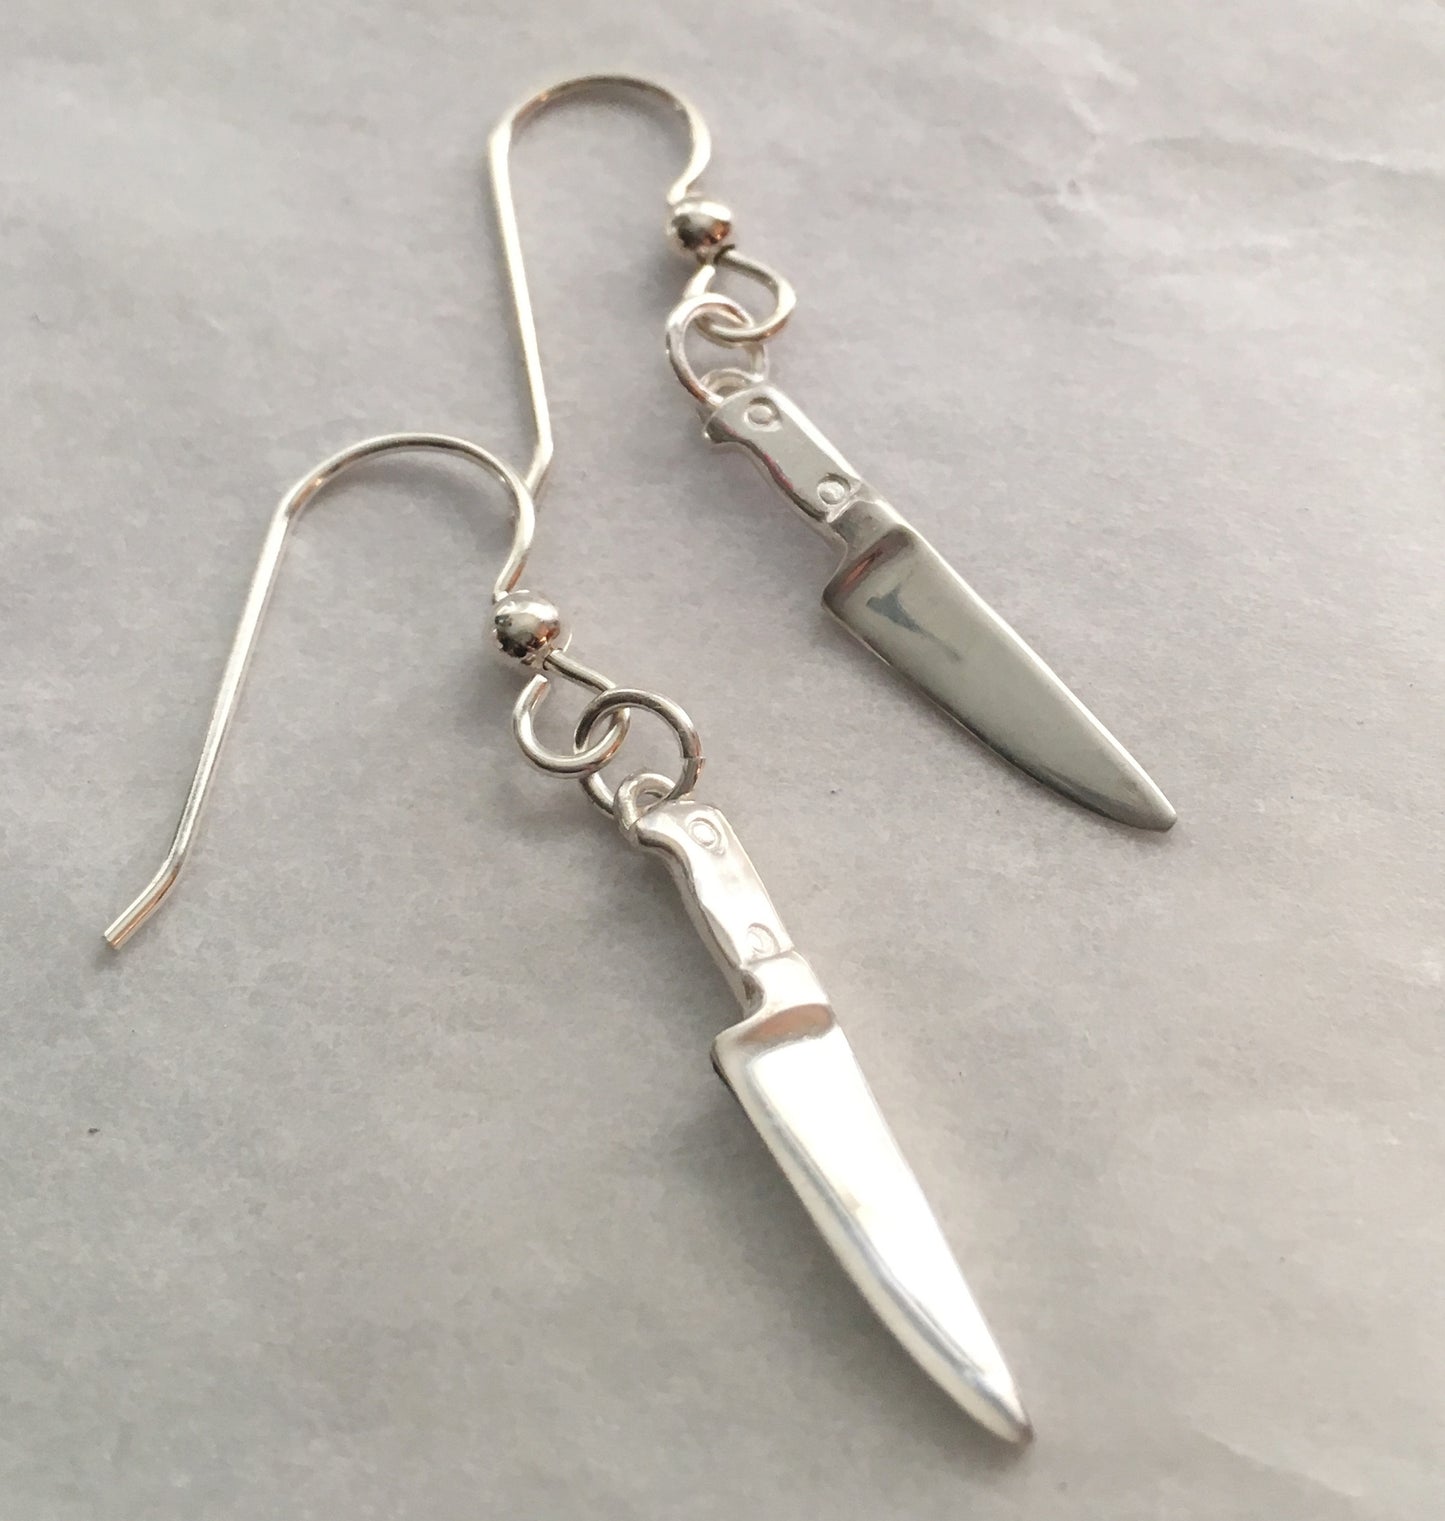 Chef Knife Dangle Earrings in Sterling Silver